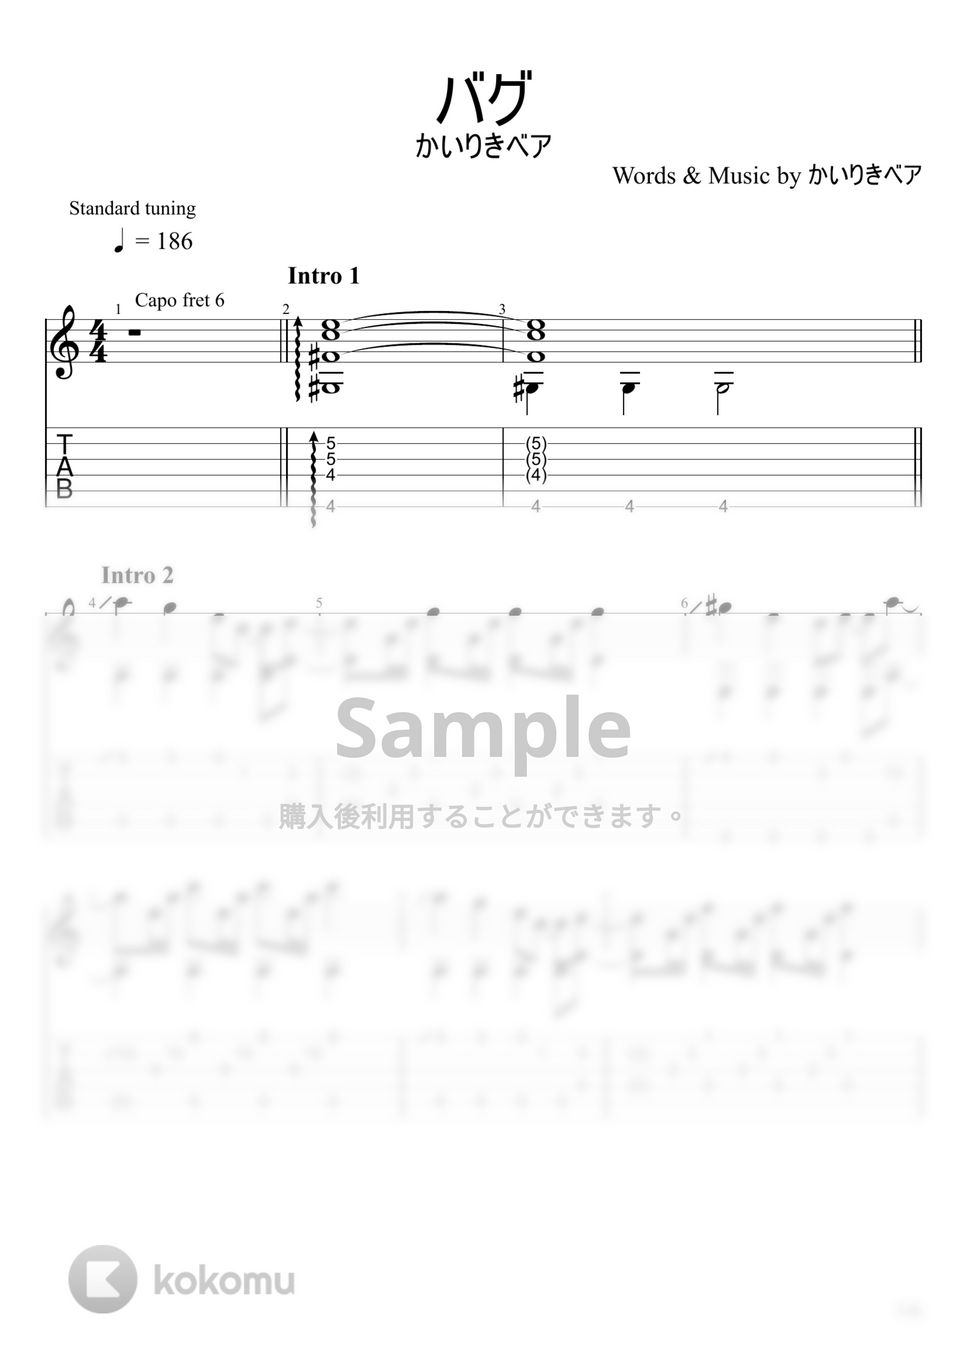 かいりきベア - バグ (ソロギター) by u3danchou